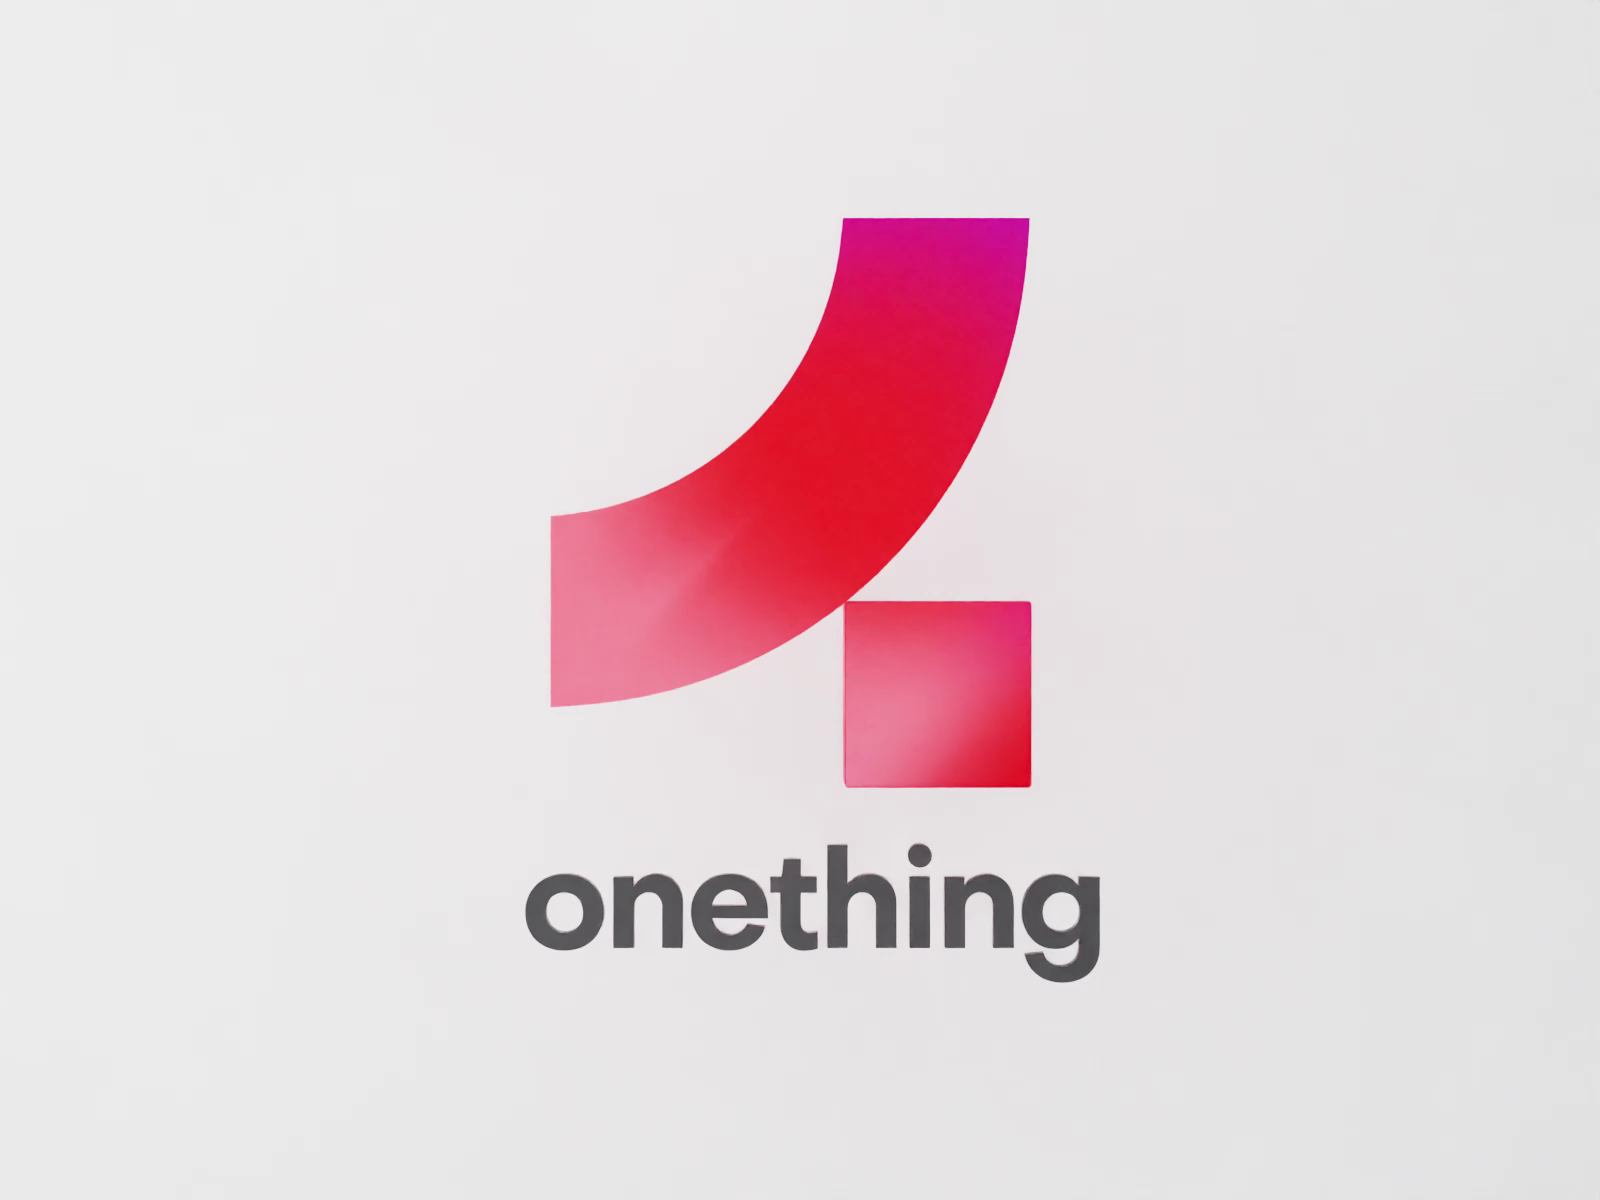 Onething | Logo Design by Onething Design on Dribbble